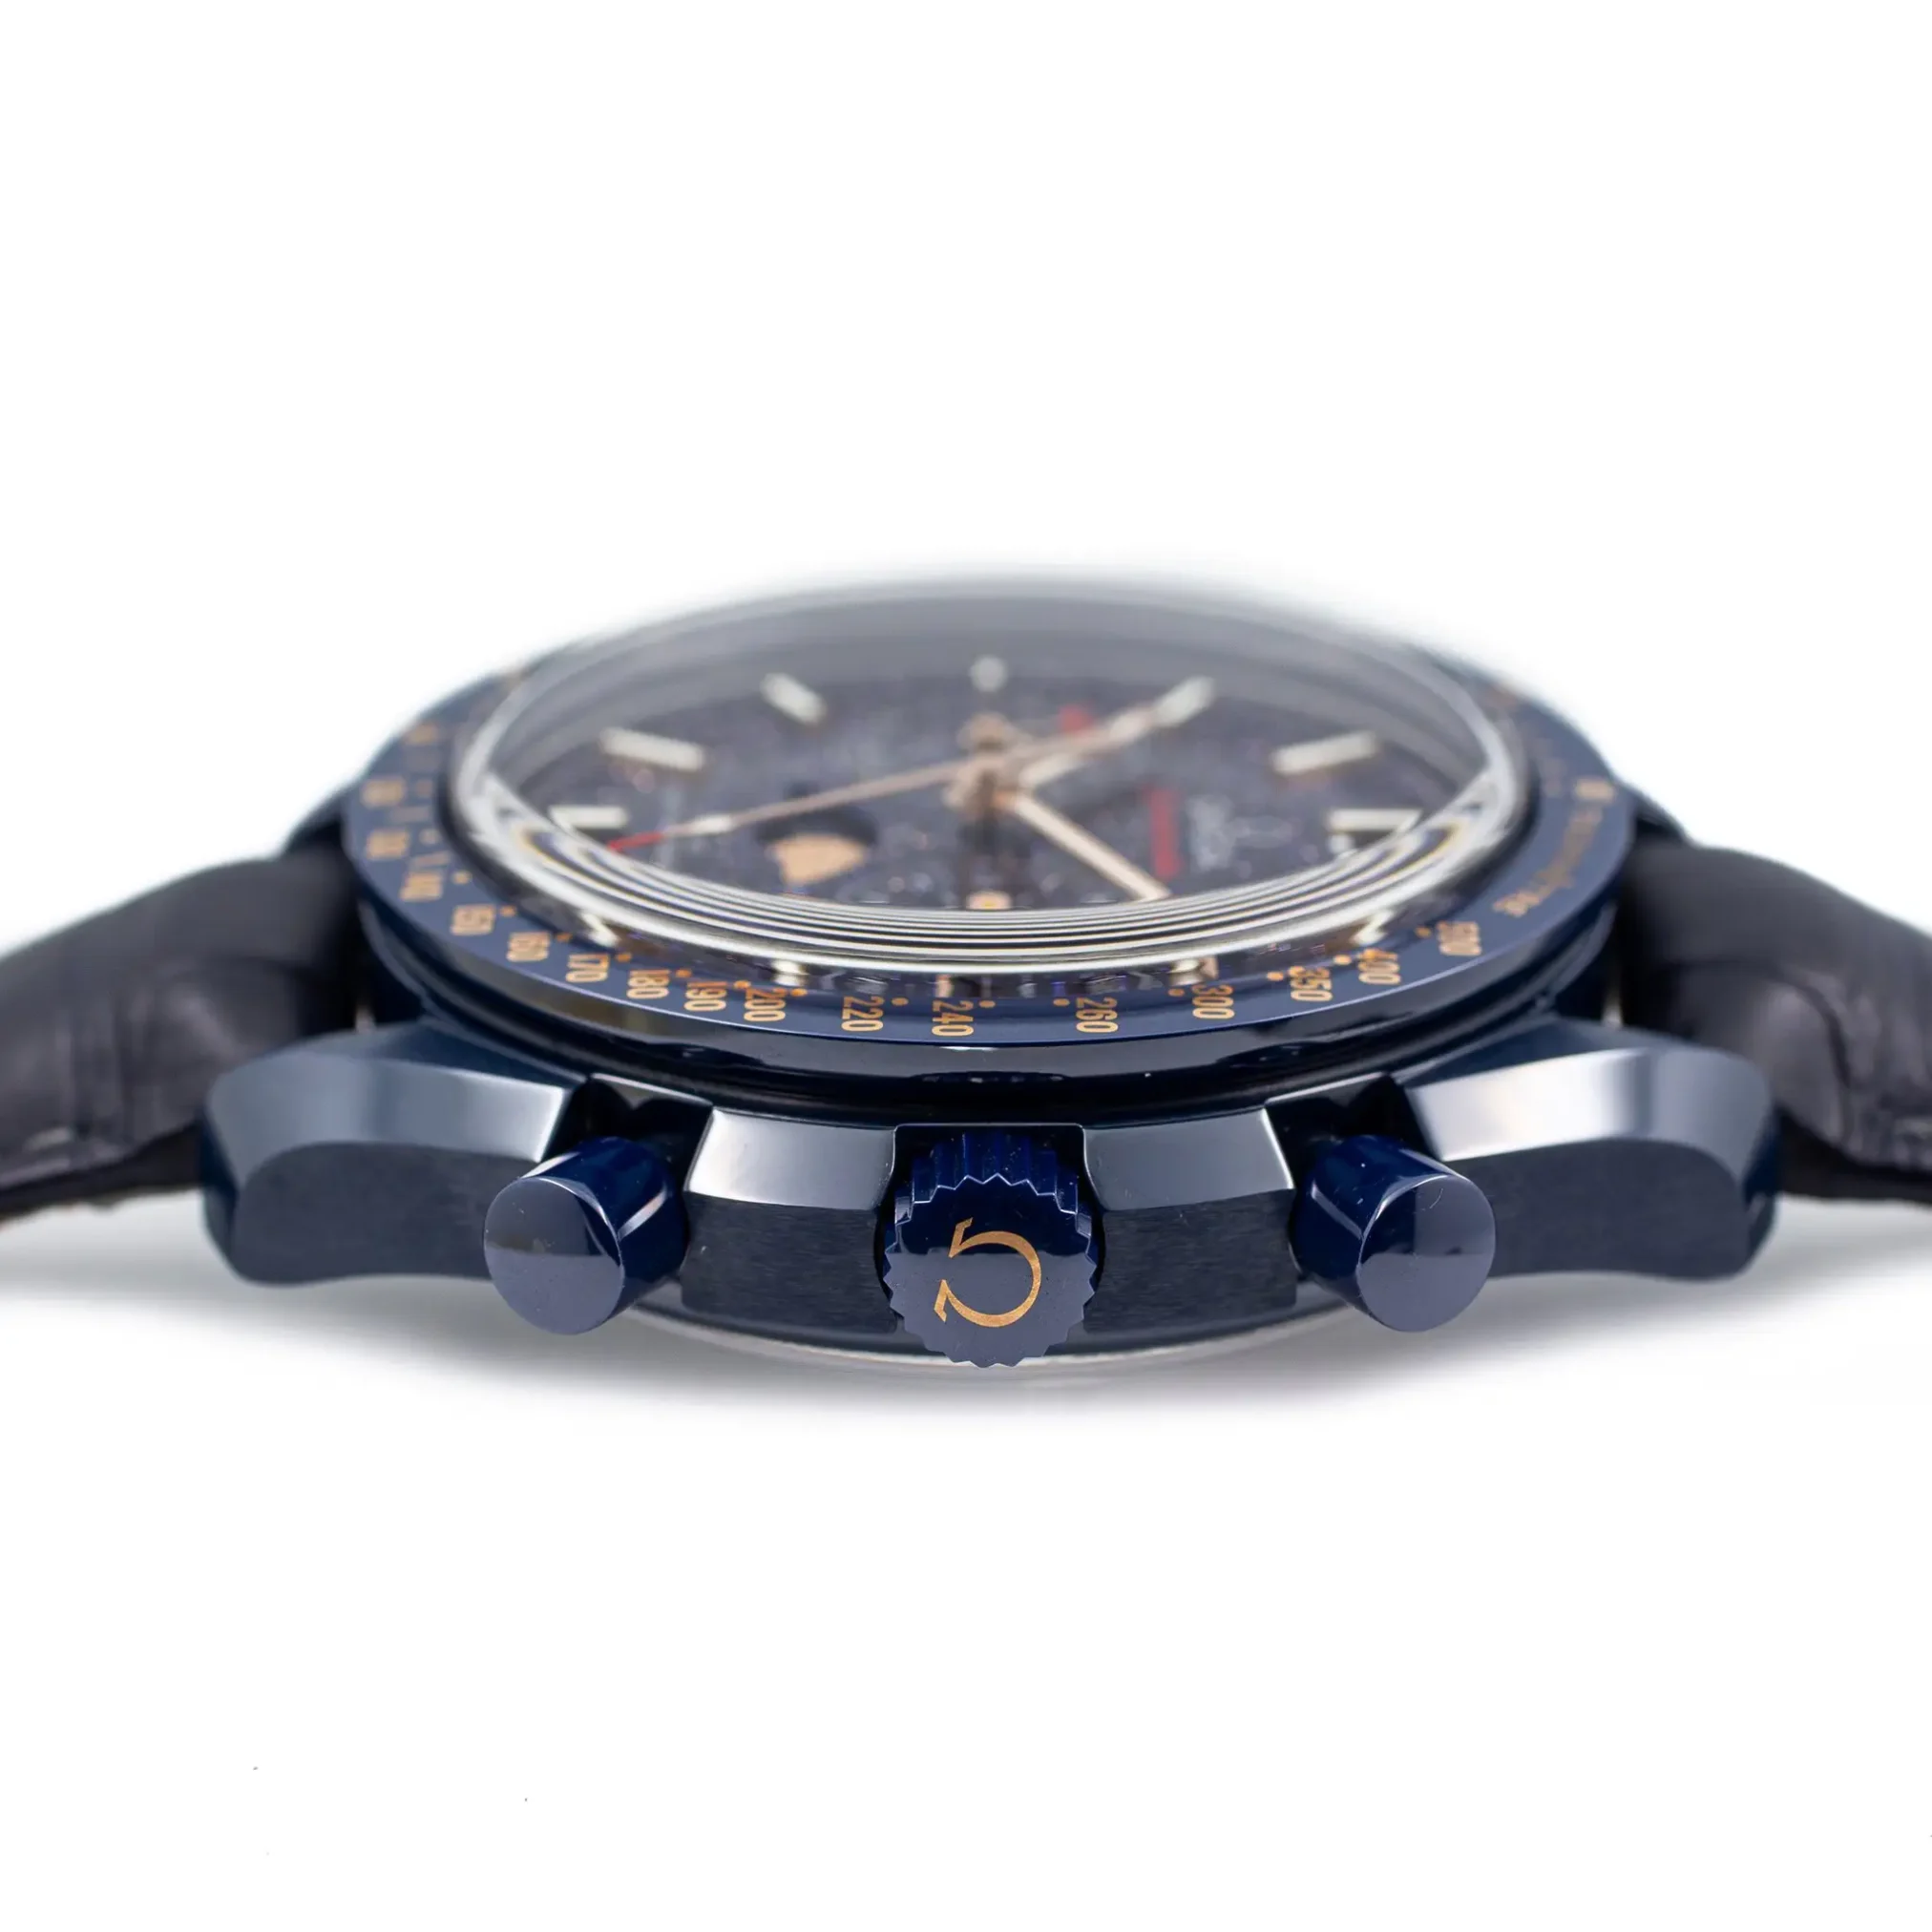 Đồng hồ Omega Seamaster Moonphase Chronometer Chronograph 304.93.44.52.03.002 mặt số màu xanh. Dây đeo bằng ceramic. Thân vỏ bằng ceramic.